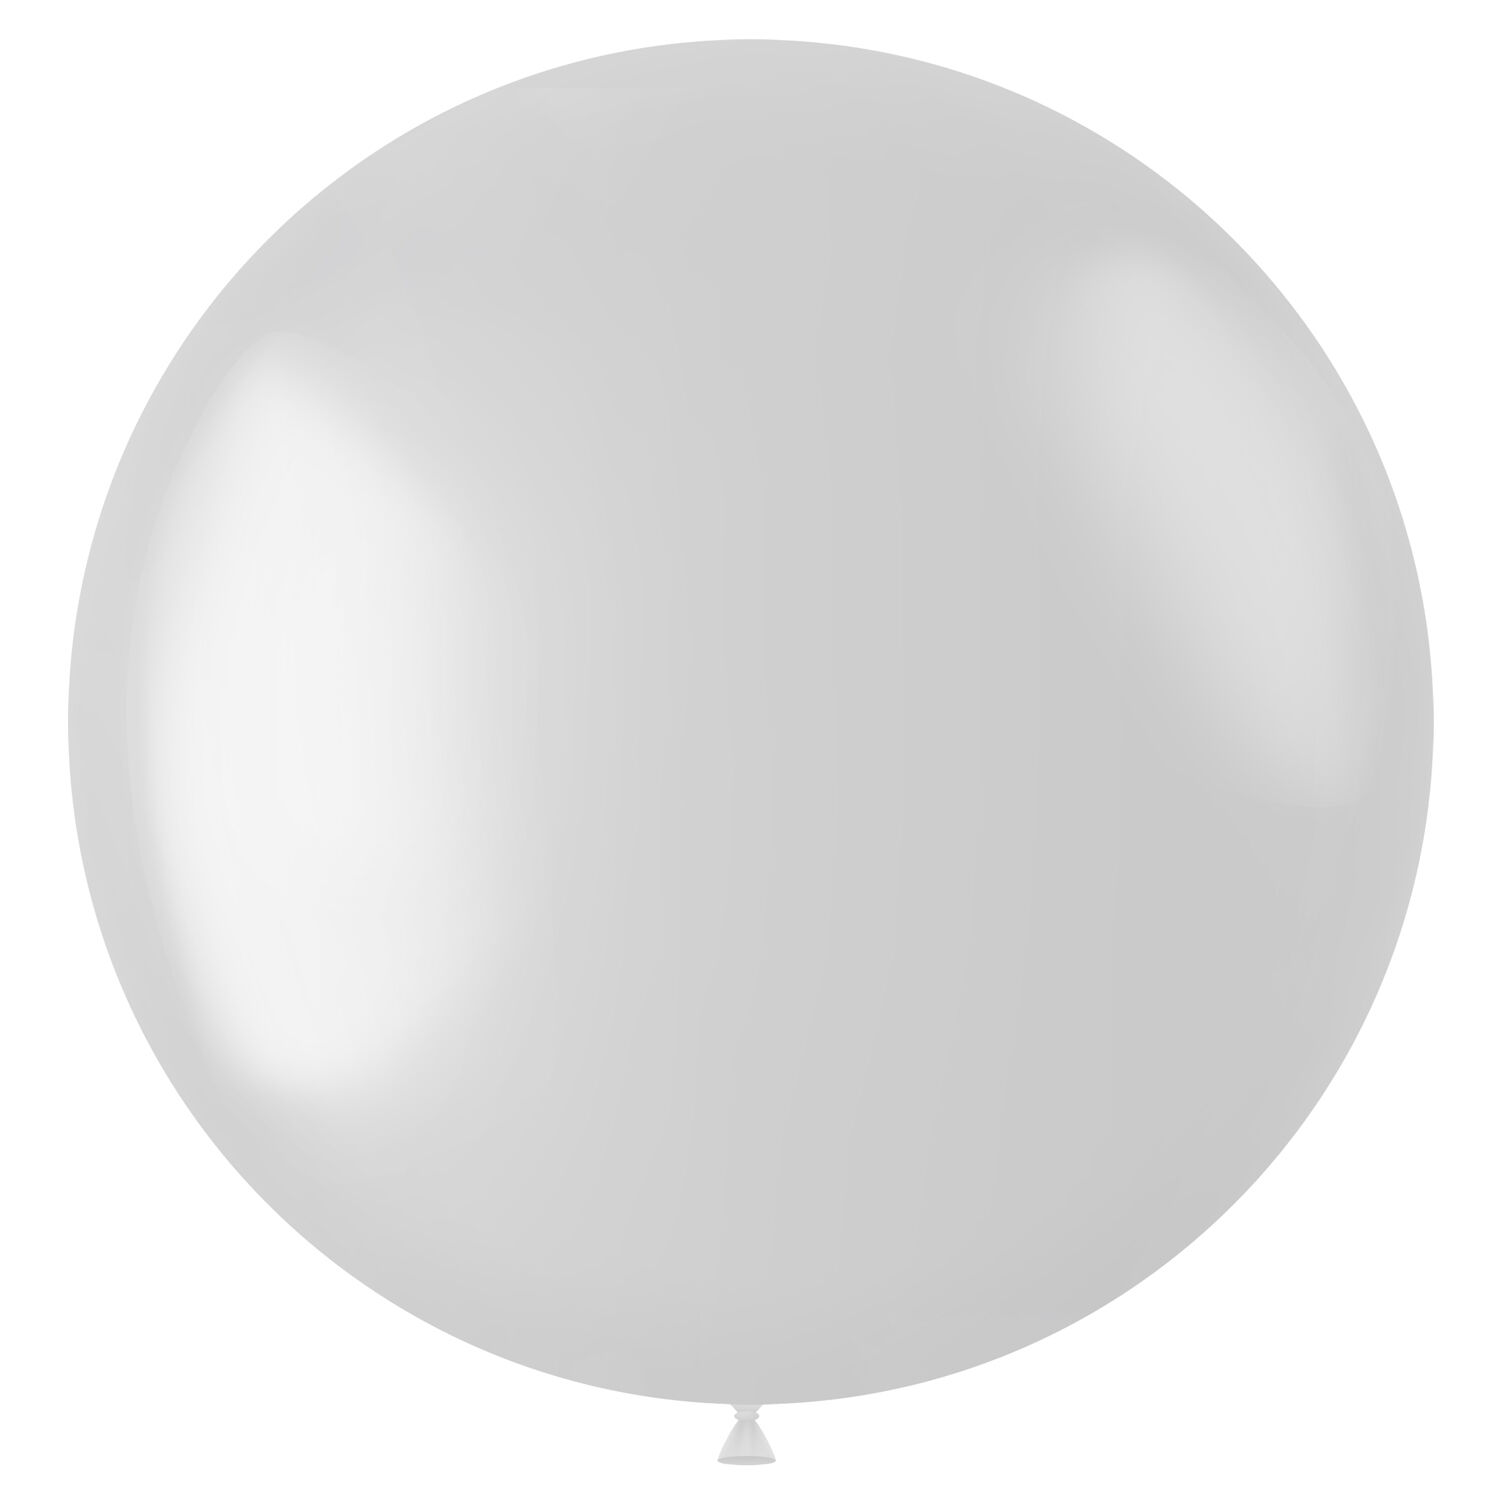 NEU Latex-Luftballon XXL matt, 80cm, weiß, Riesenballon